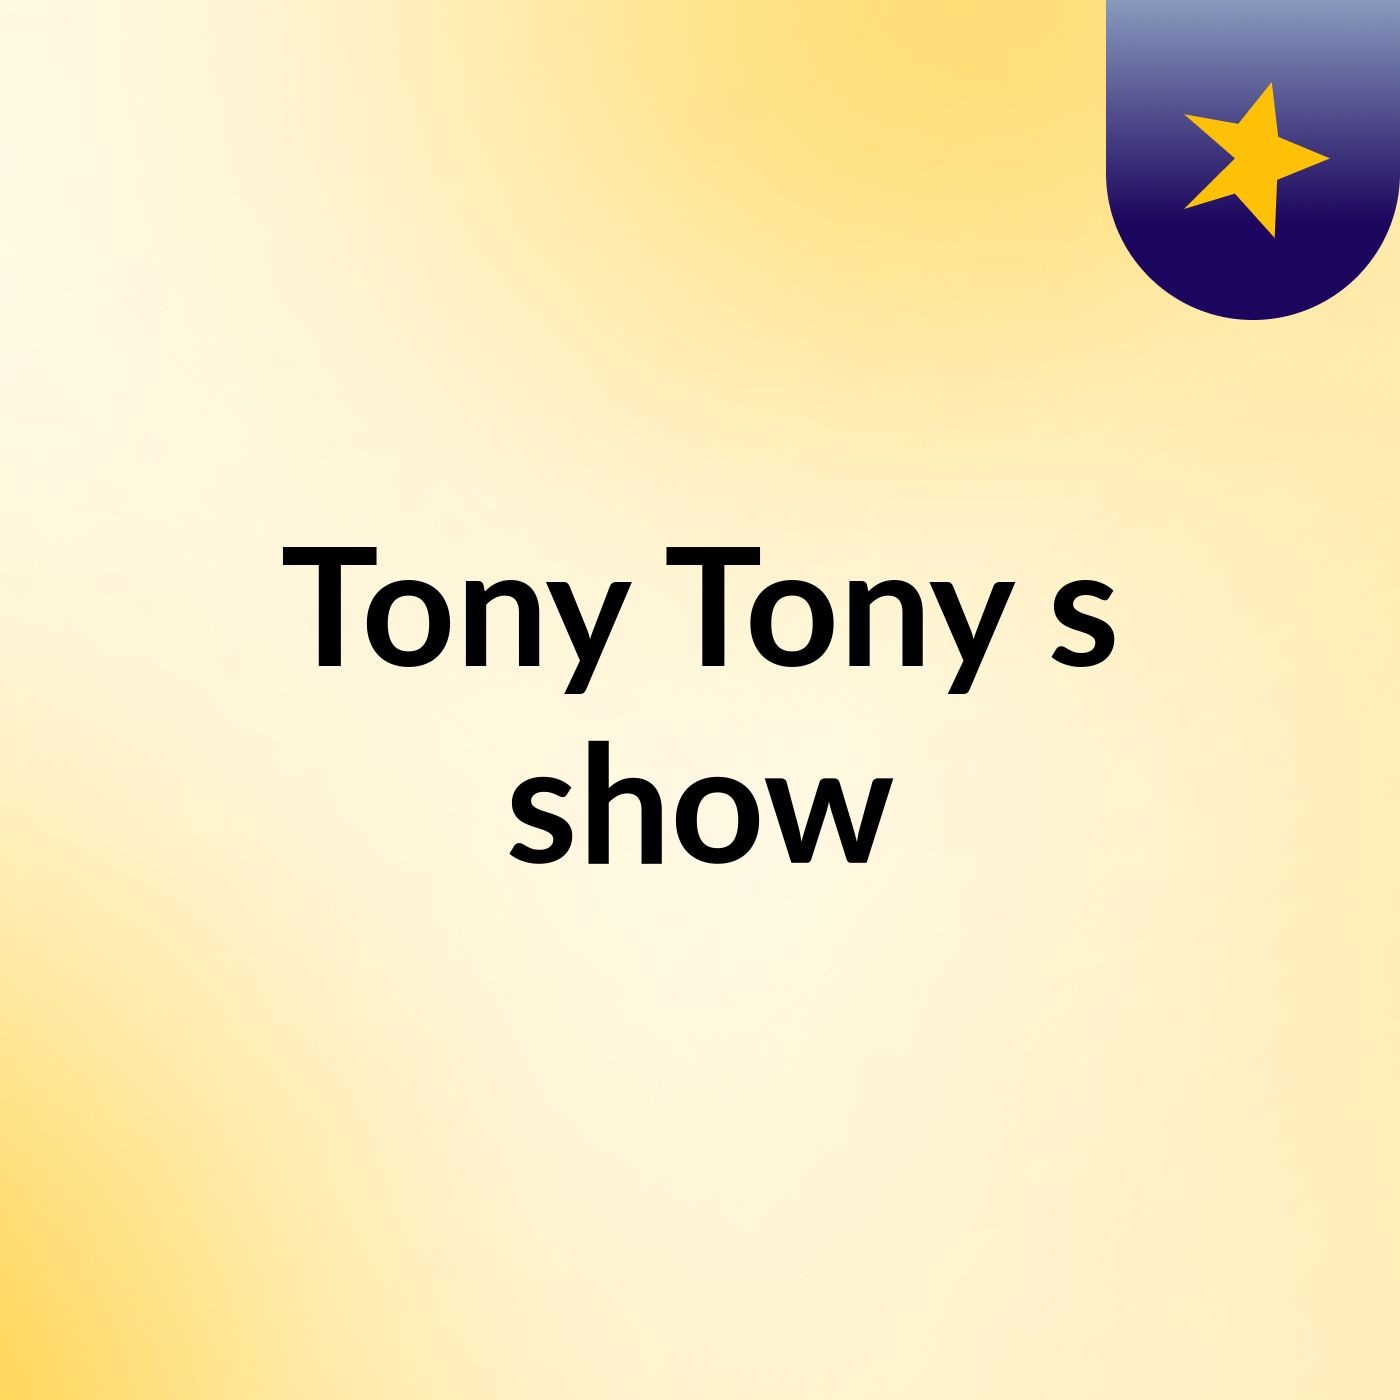 Tony Tony's show